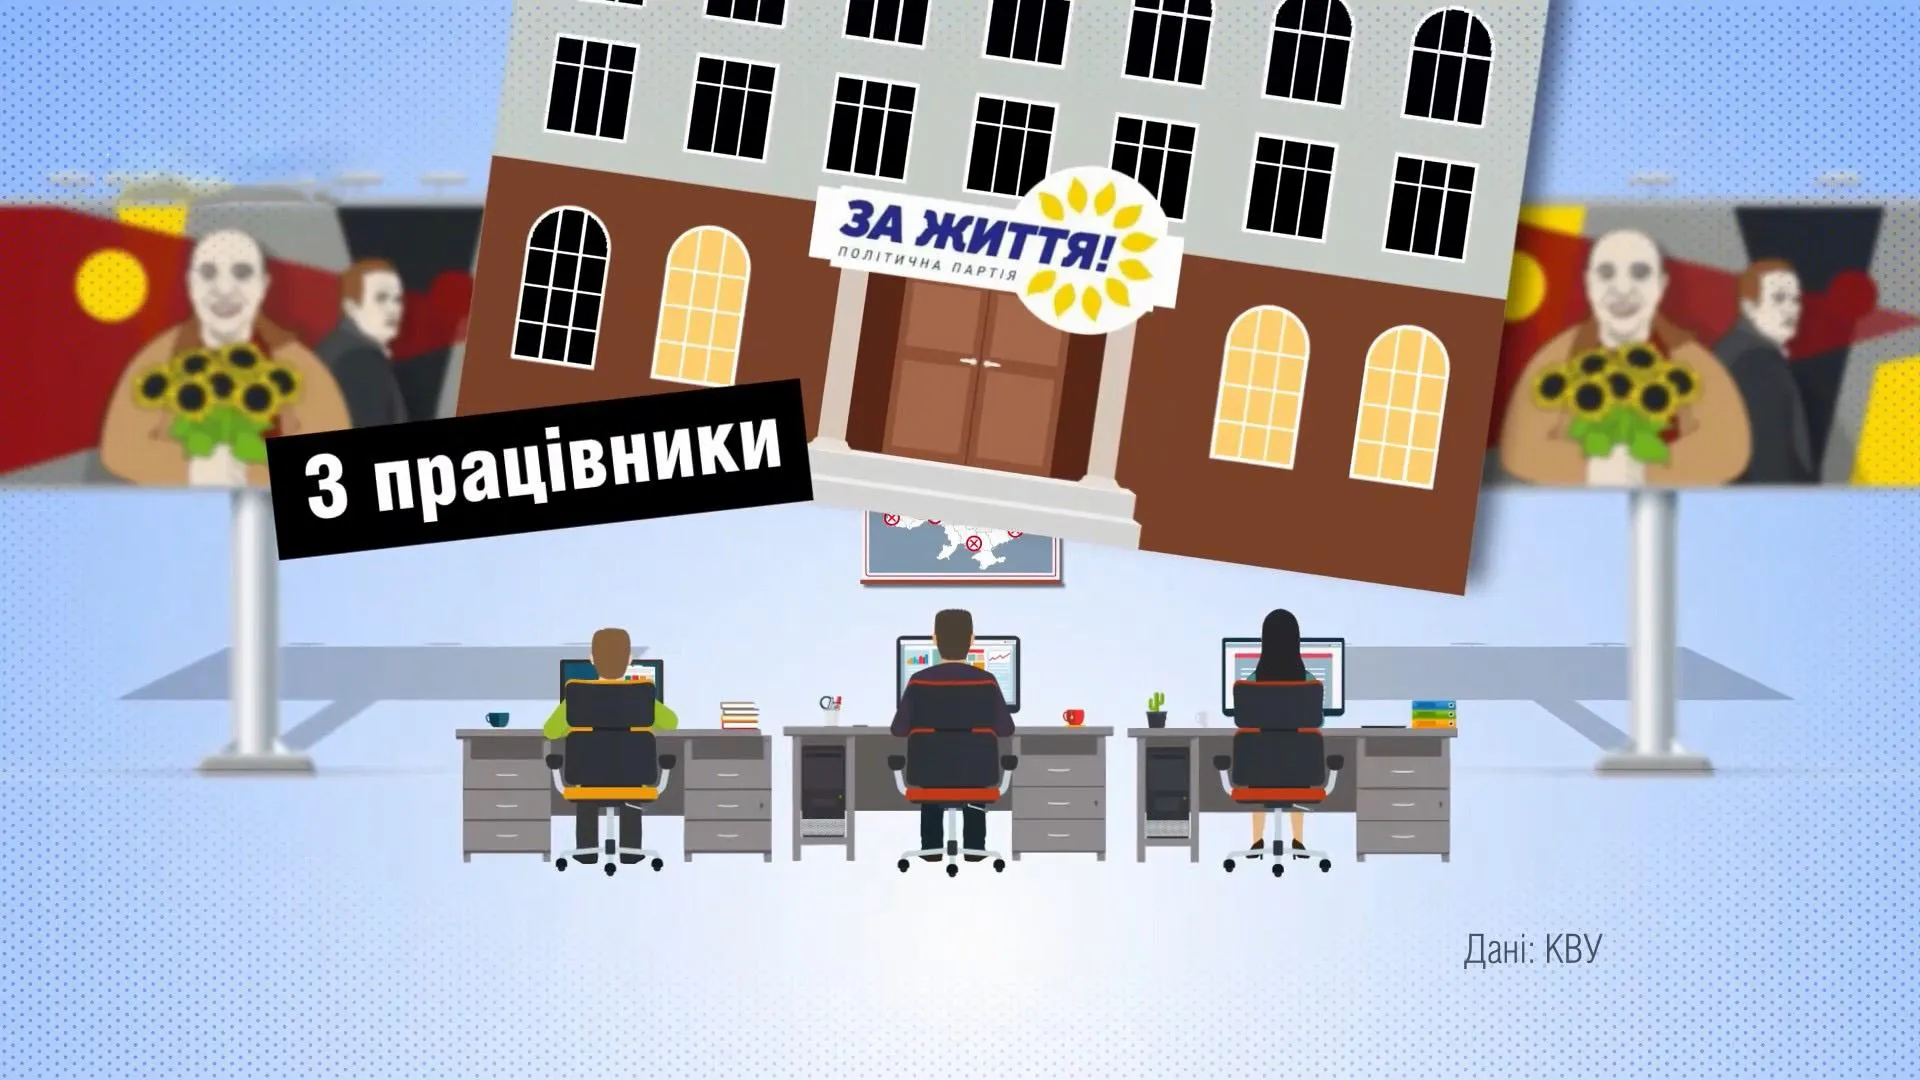 політичні партій україни реклама